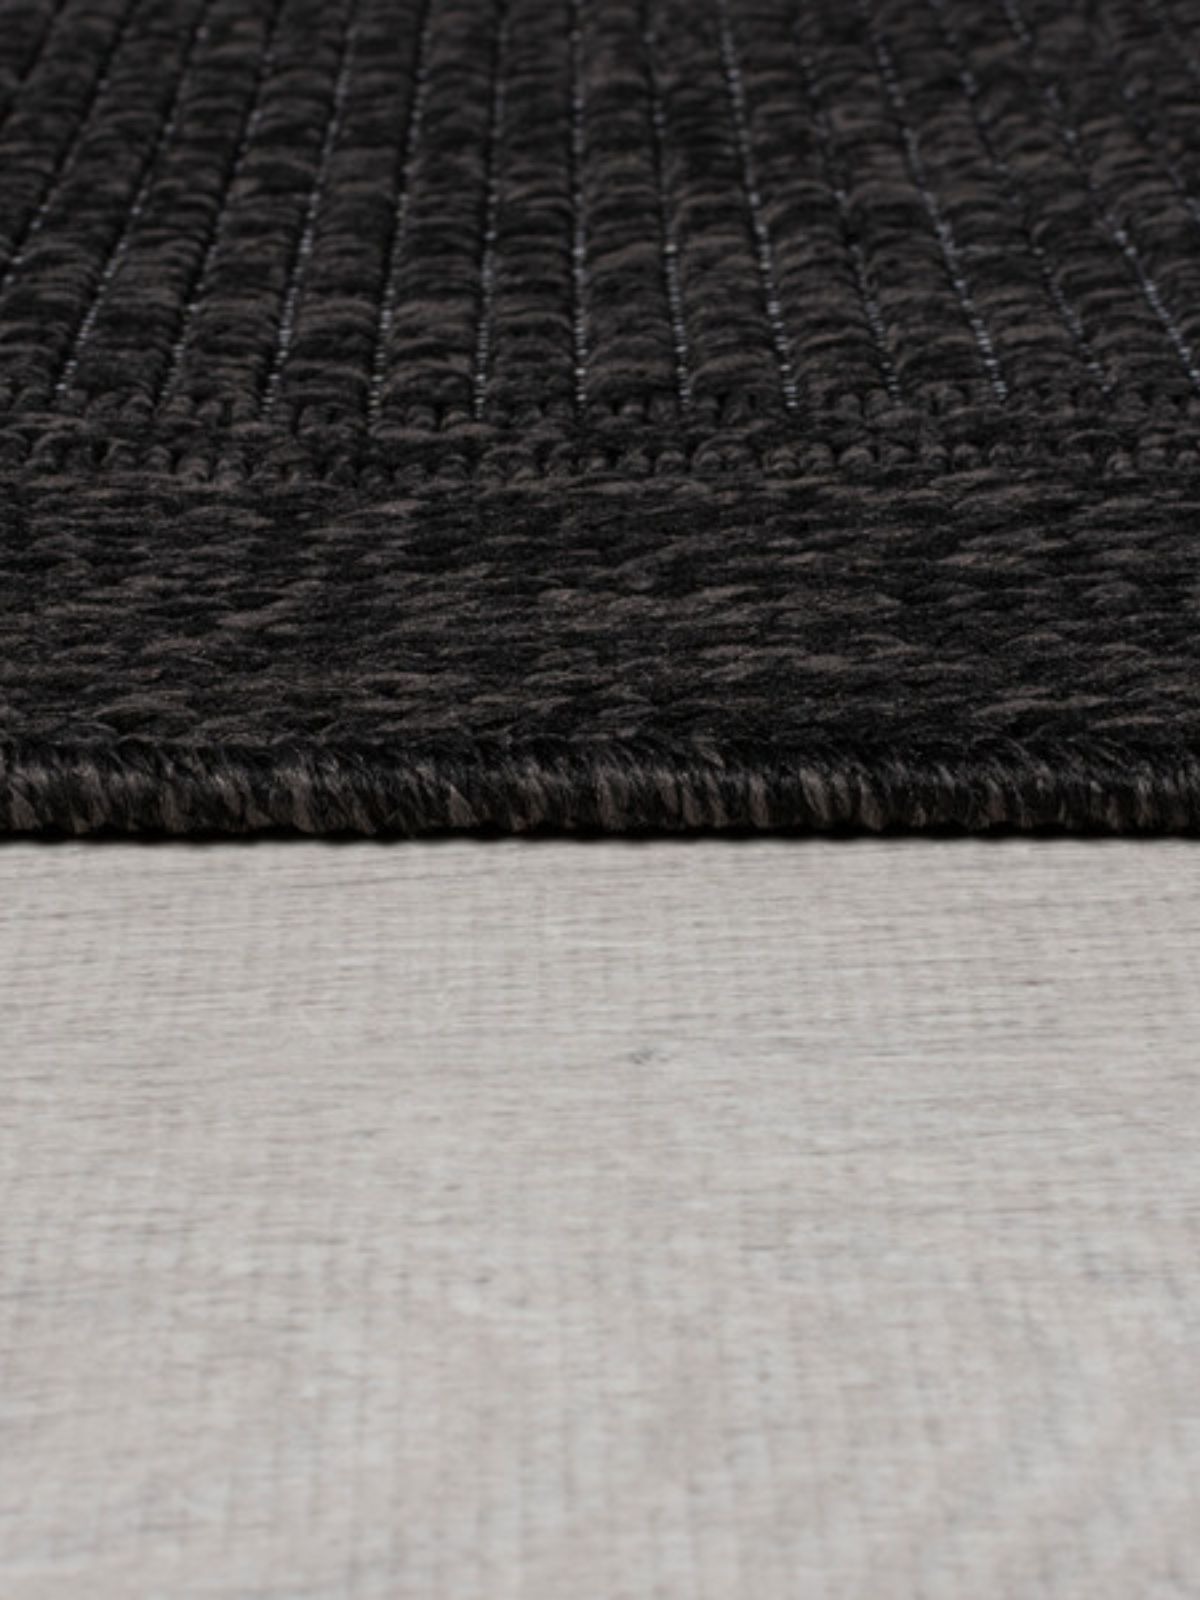 Tappeto di design Weave Outdoor in iuta, colore carbone-7